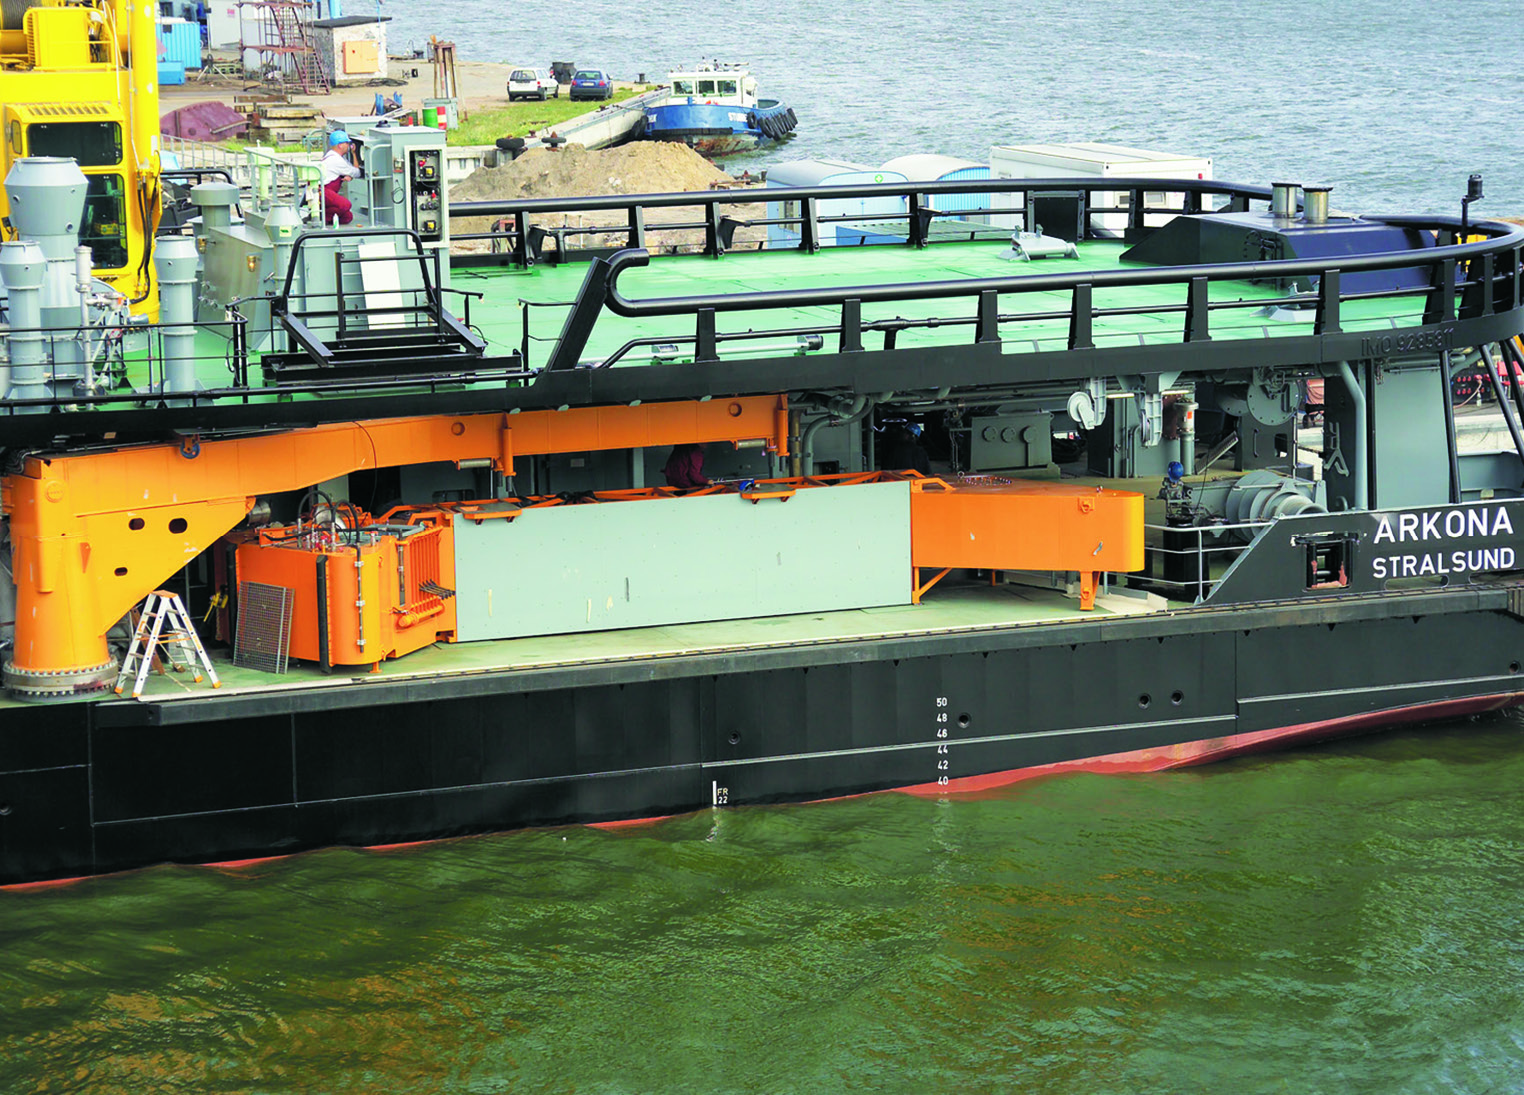 Oil spill response vessel ARKONA